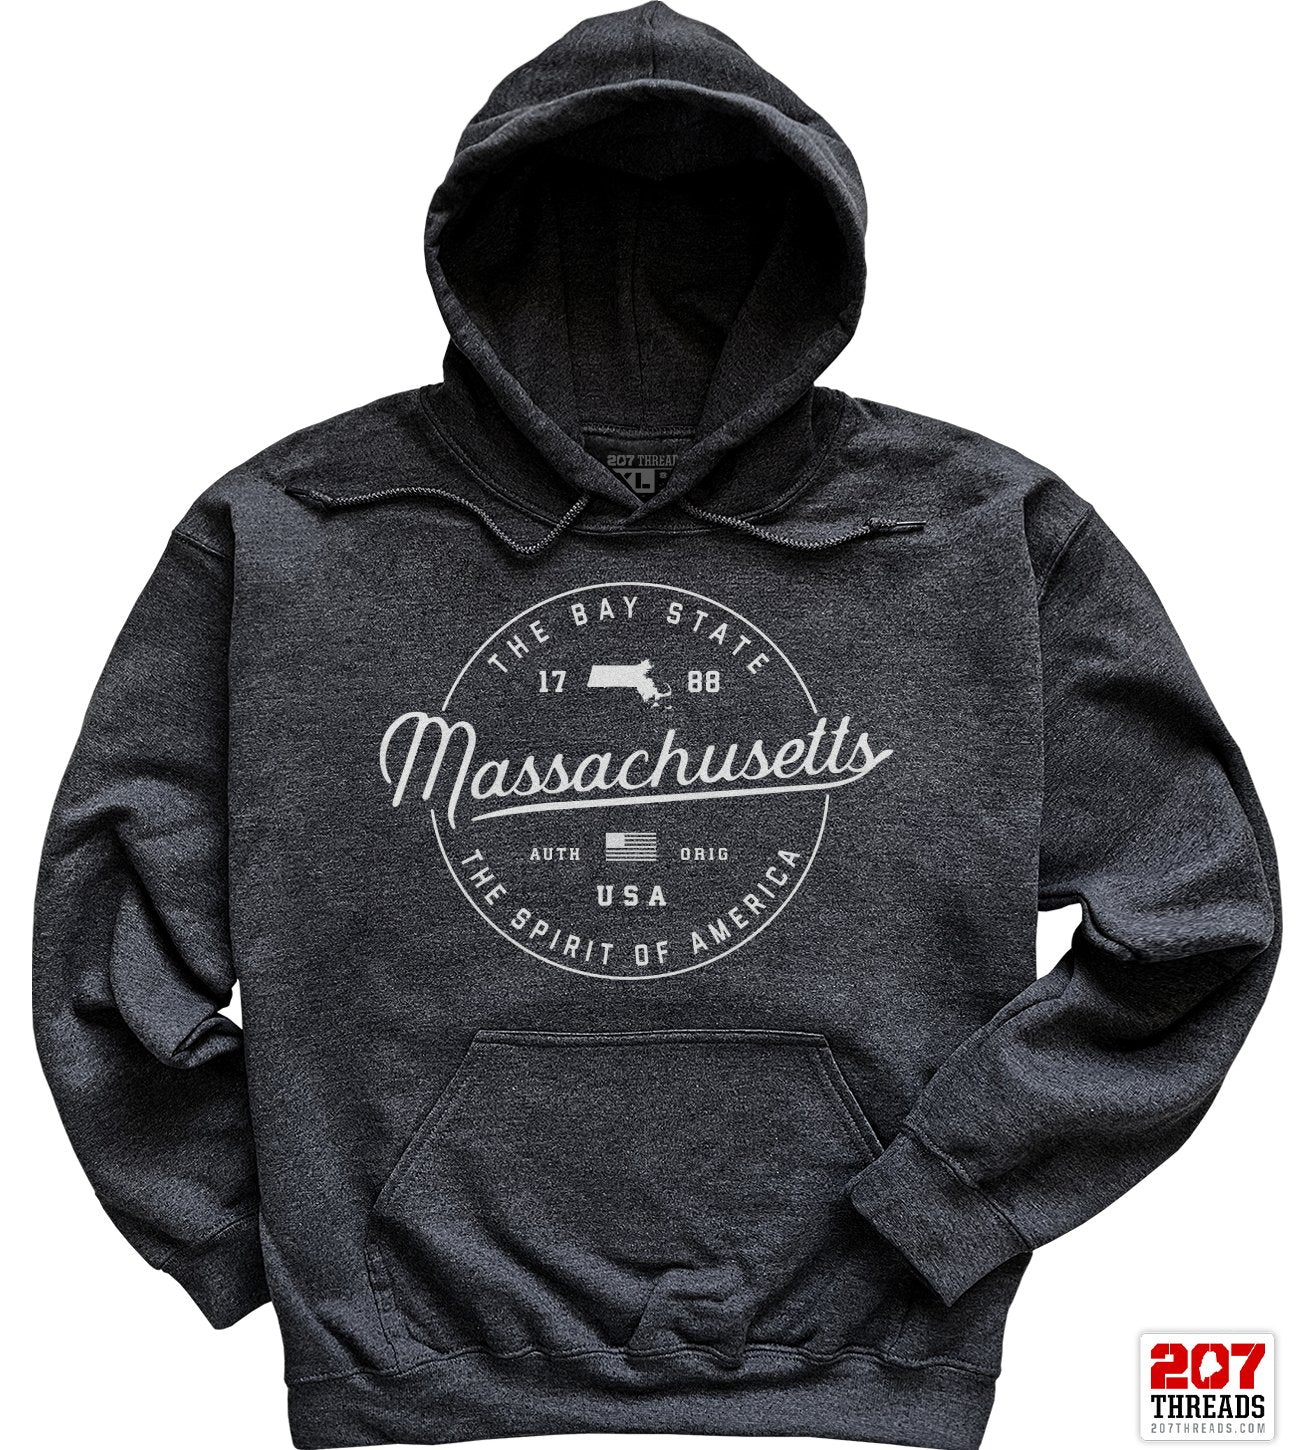 State of Massachusetts Hoodie Sweatshirt